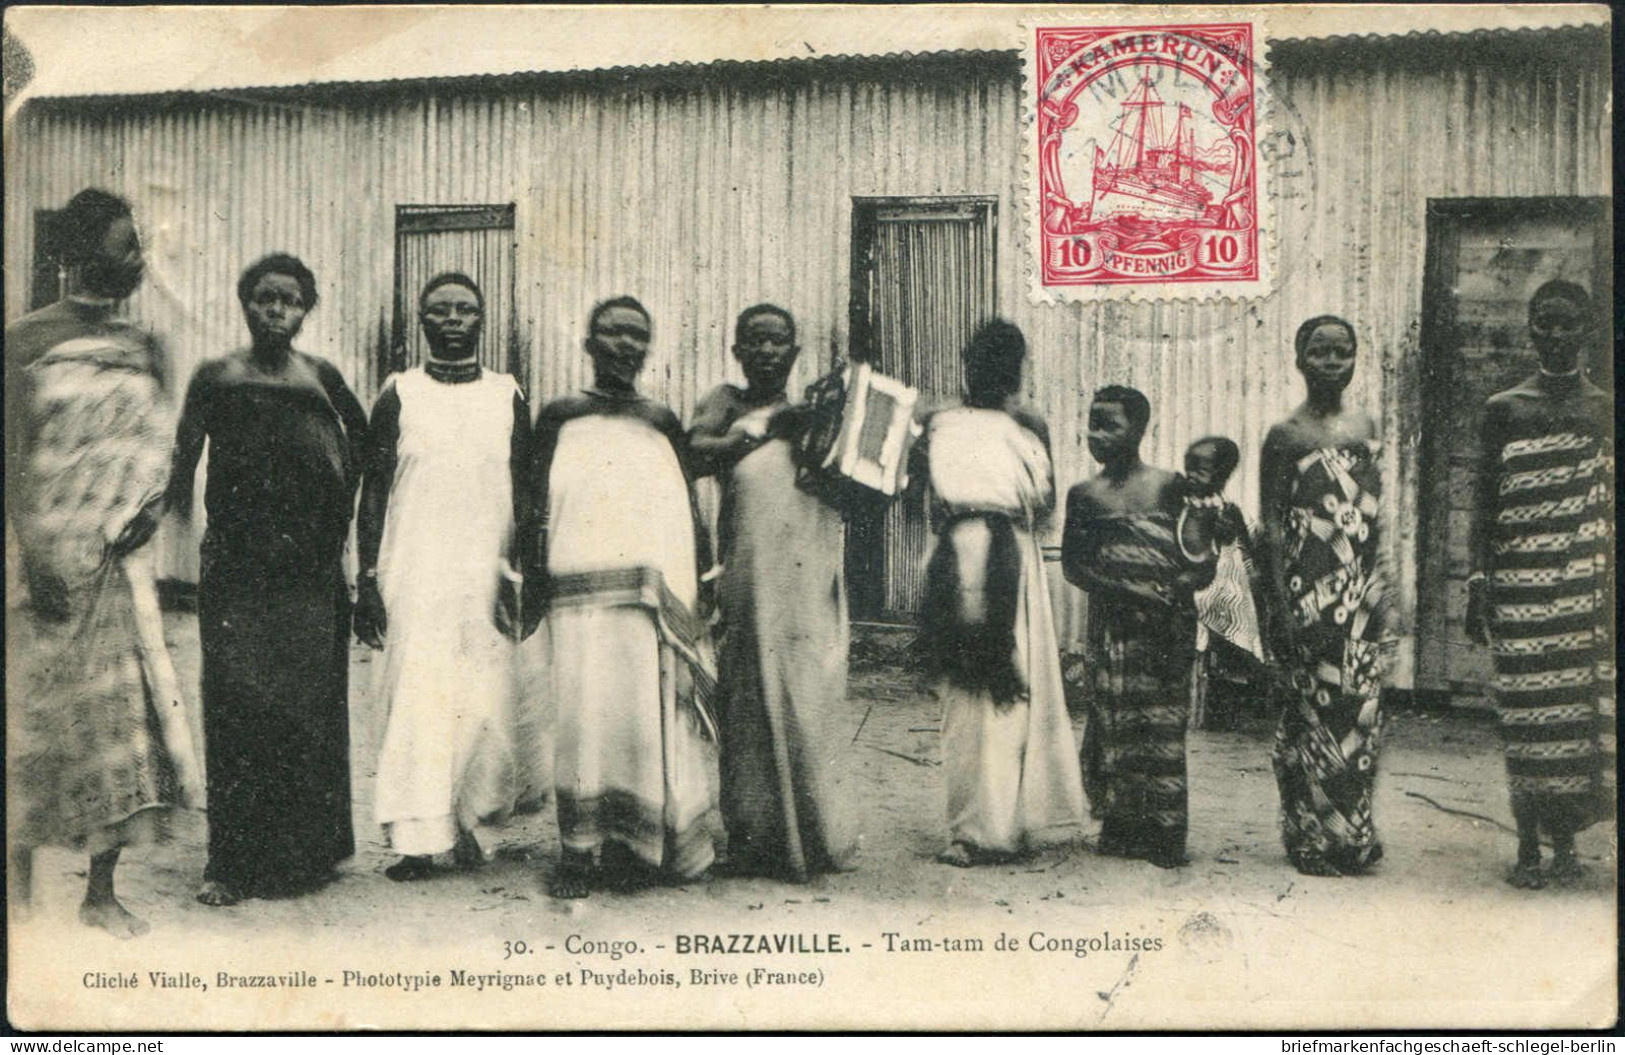 Deutsche Kolonien Kamerun, Brief - Kameroen